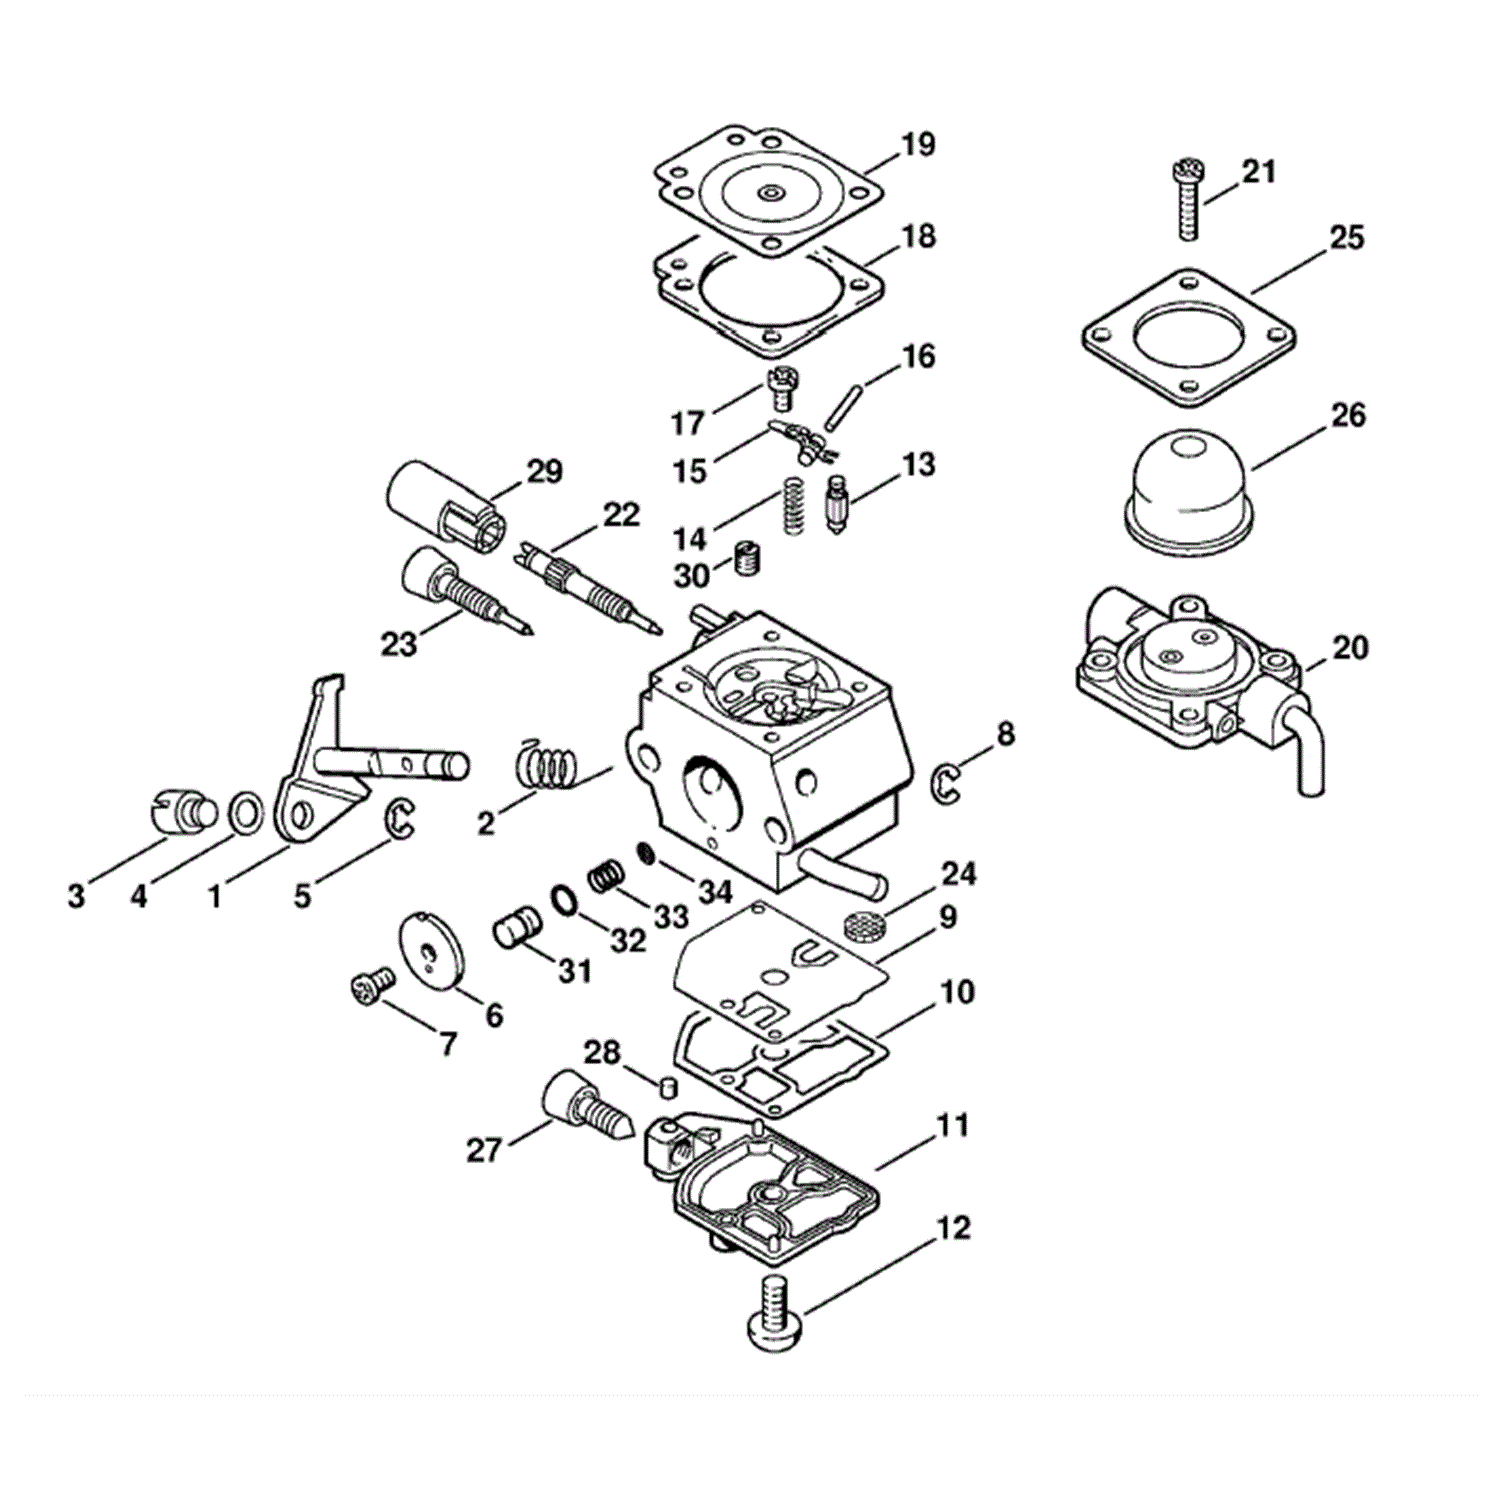  FS 45 Brushcutter (FS45C-EZ) Parts Diagram, Carburetor C1QS66